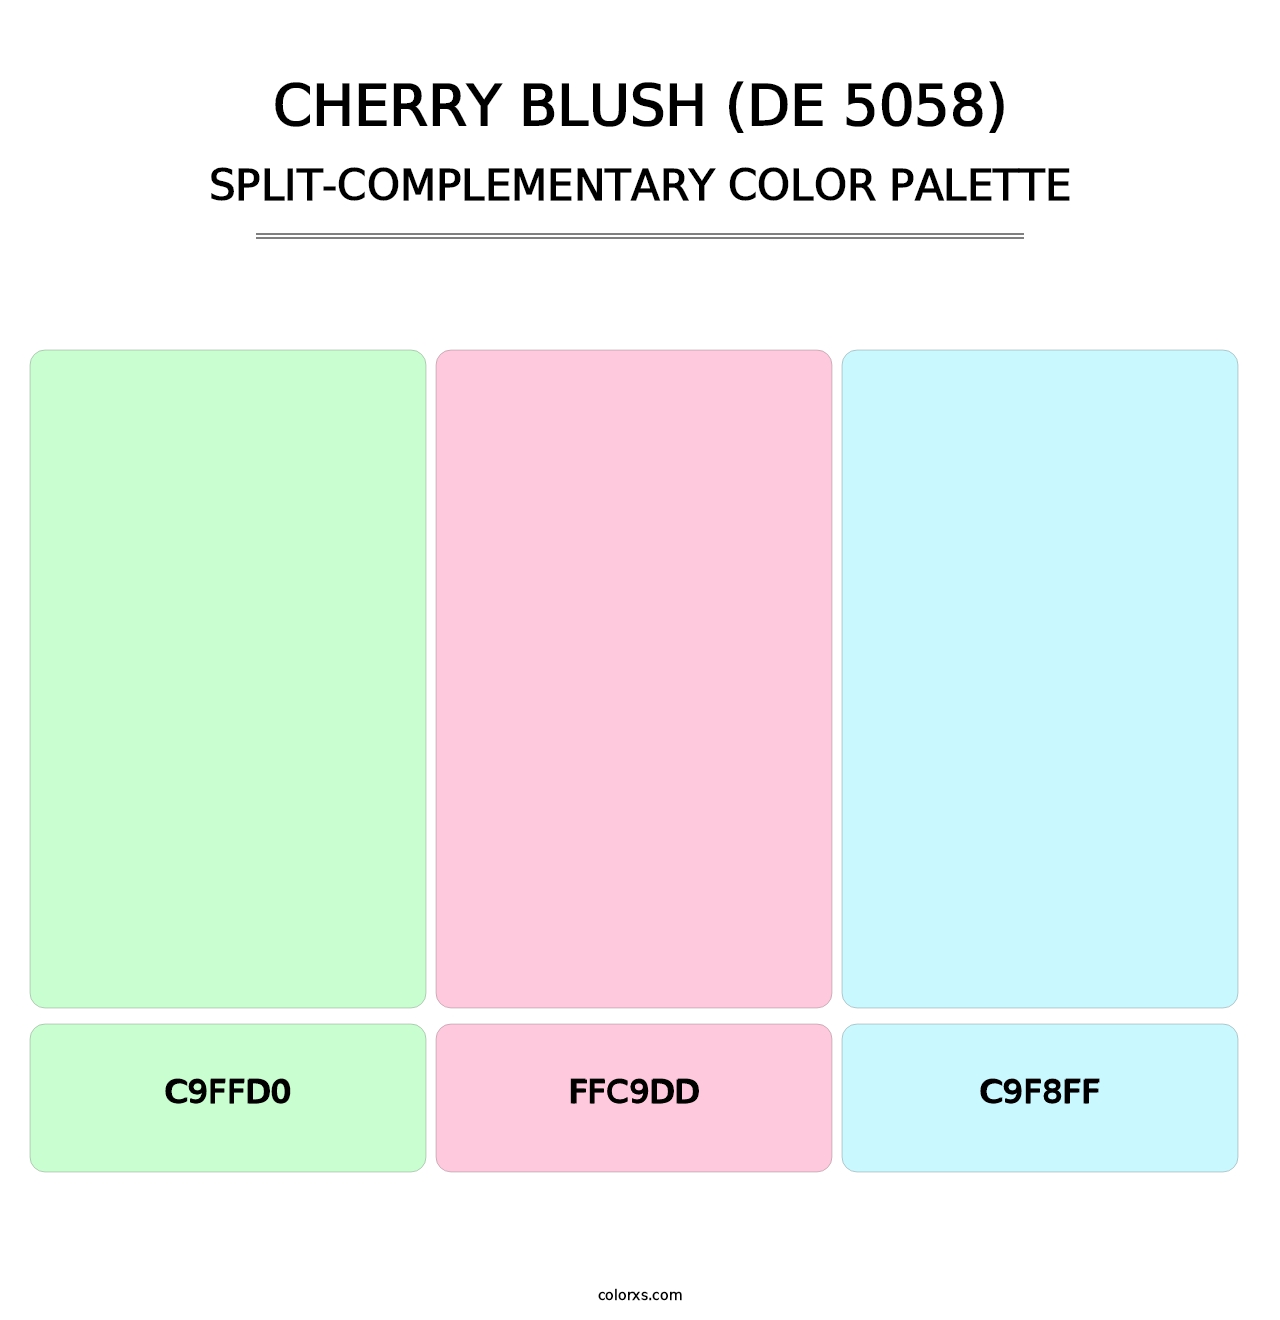 Cherry Blush (DE 5058) - Split-Complementary Color Palette